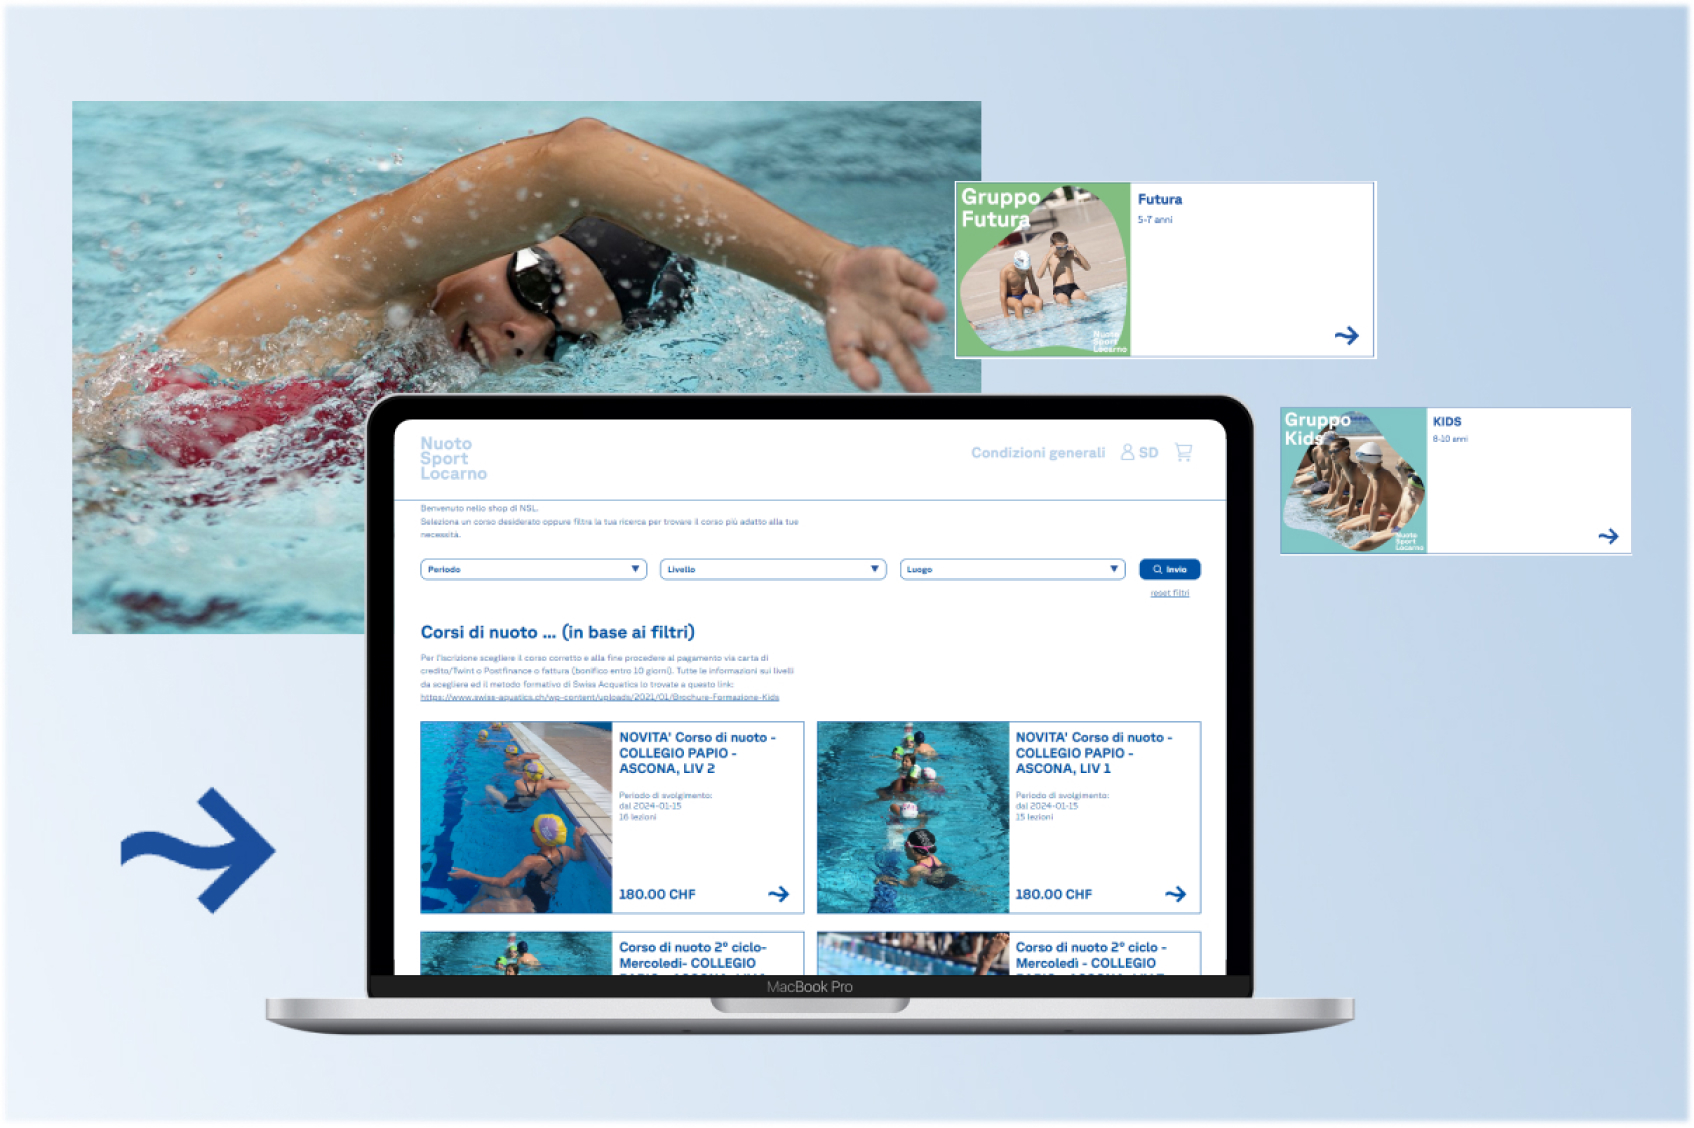 Nuotosport, fra Canton Ticino e spazi digitali